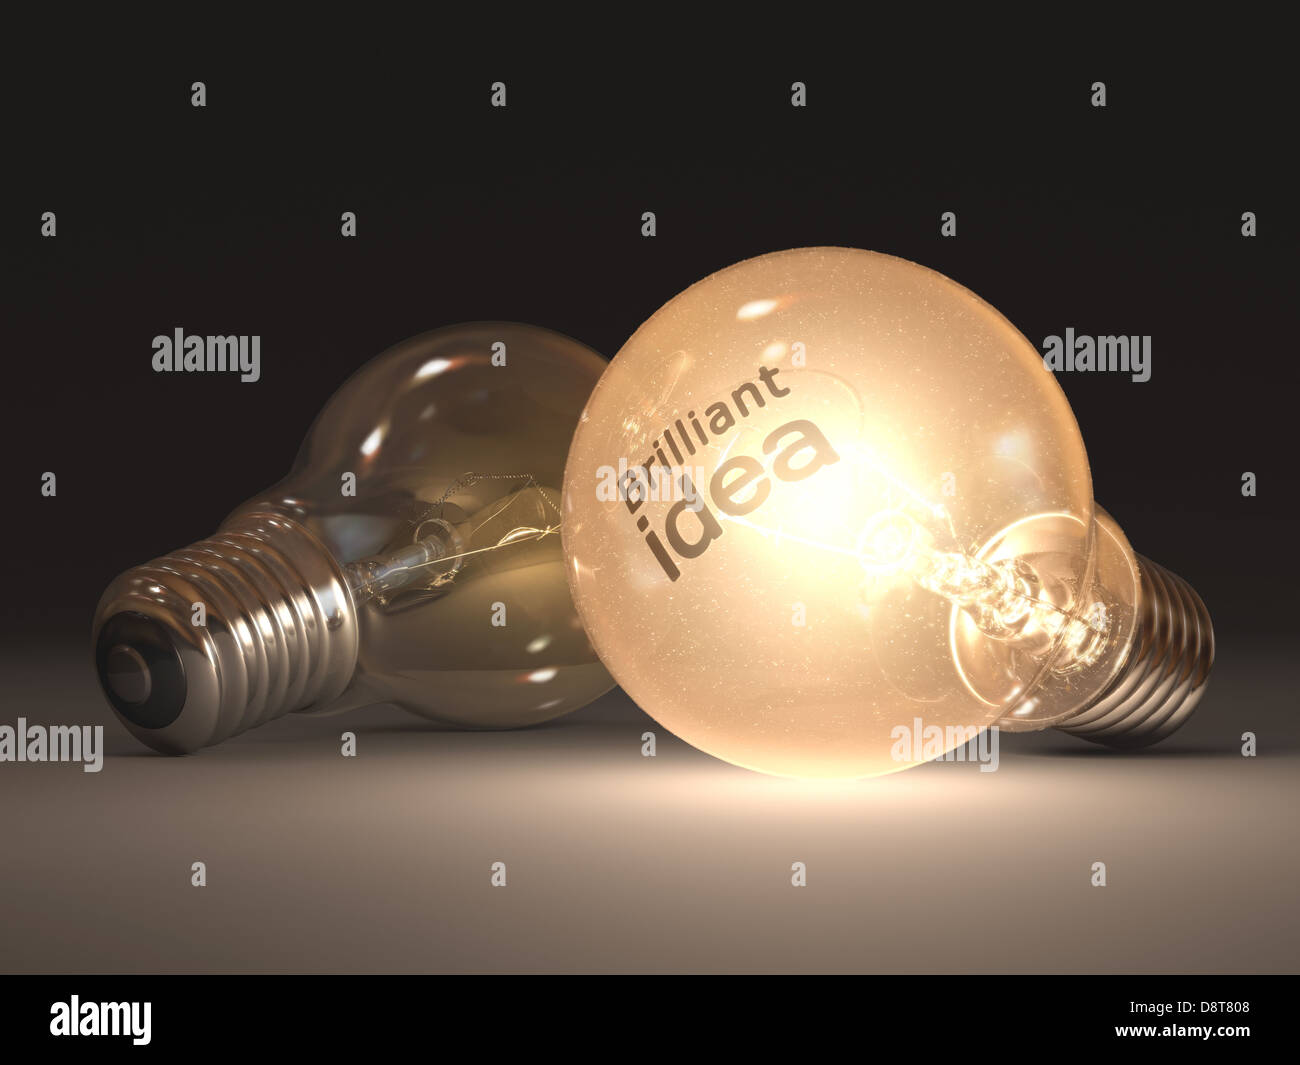 Lampe allumée à l'idée lumineuse de la marque lamp. Banque D'Images